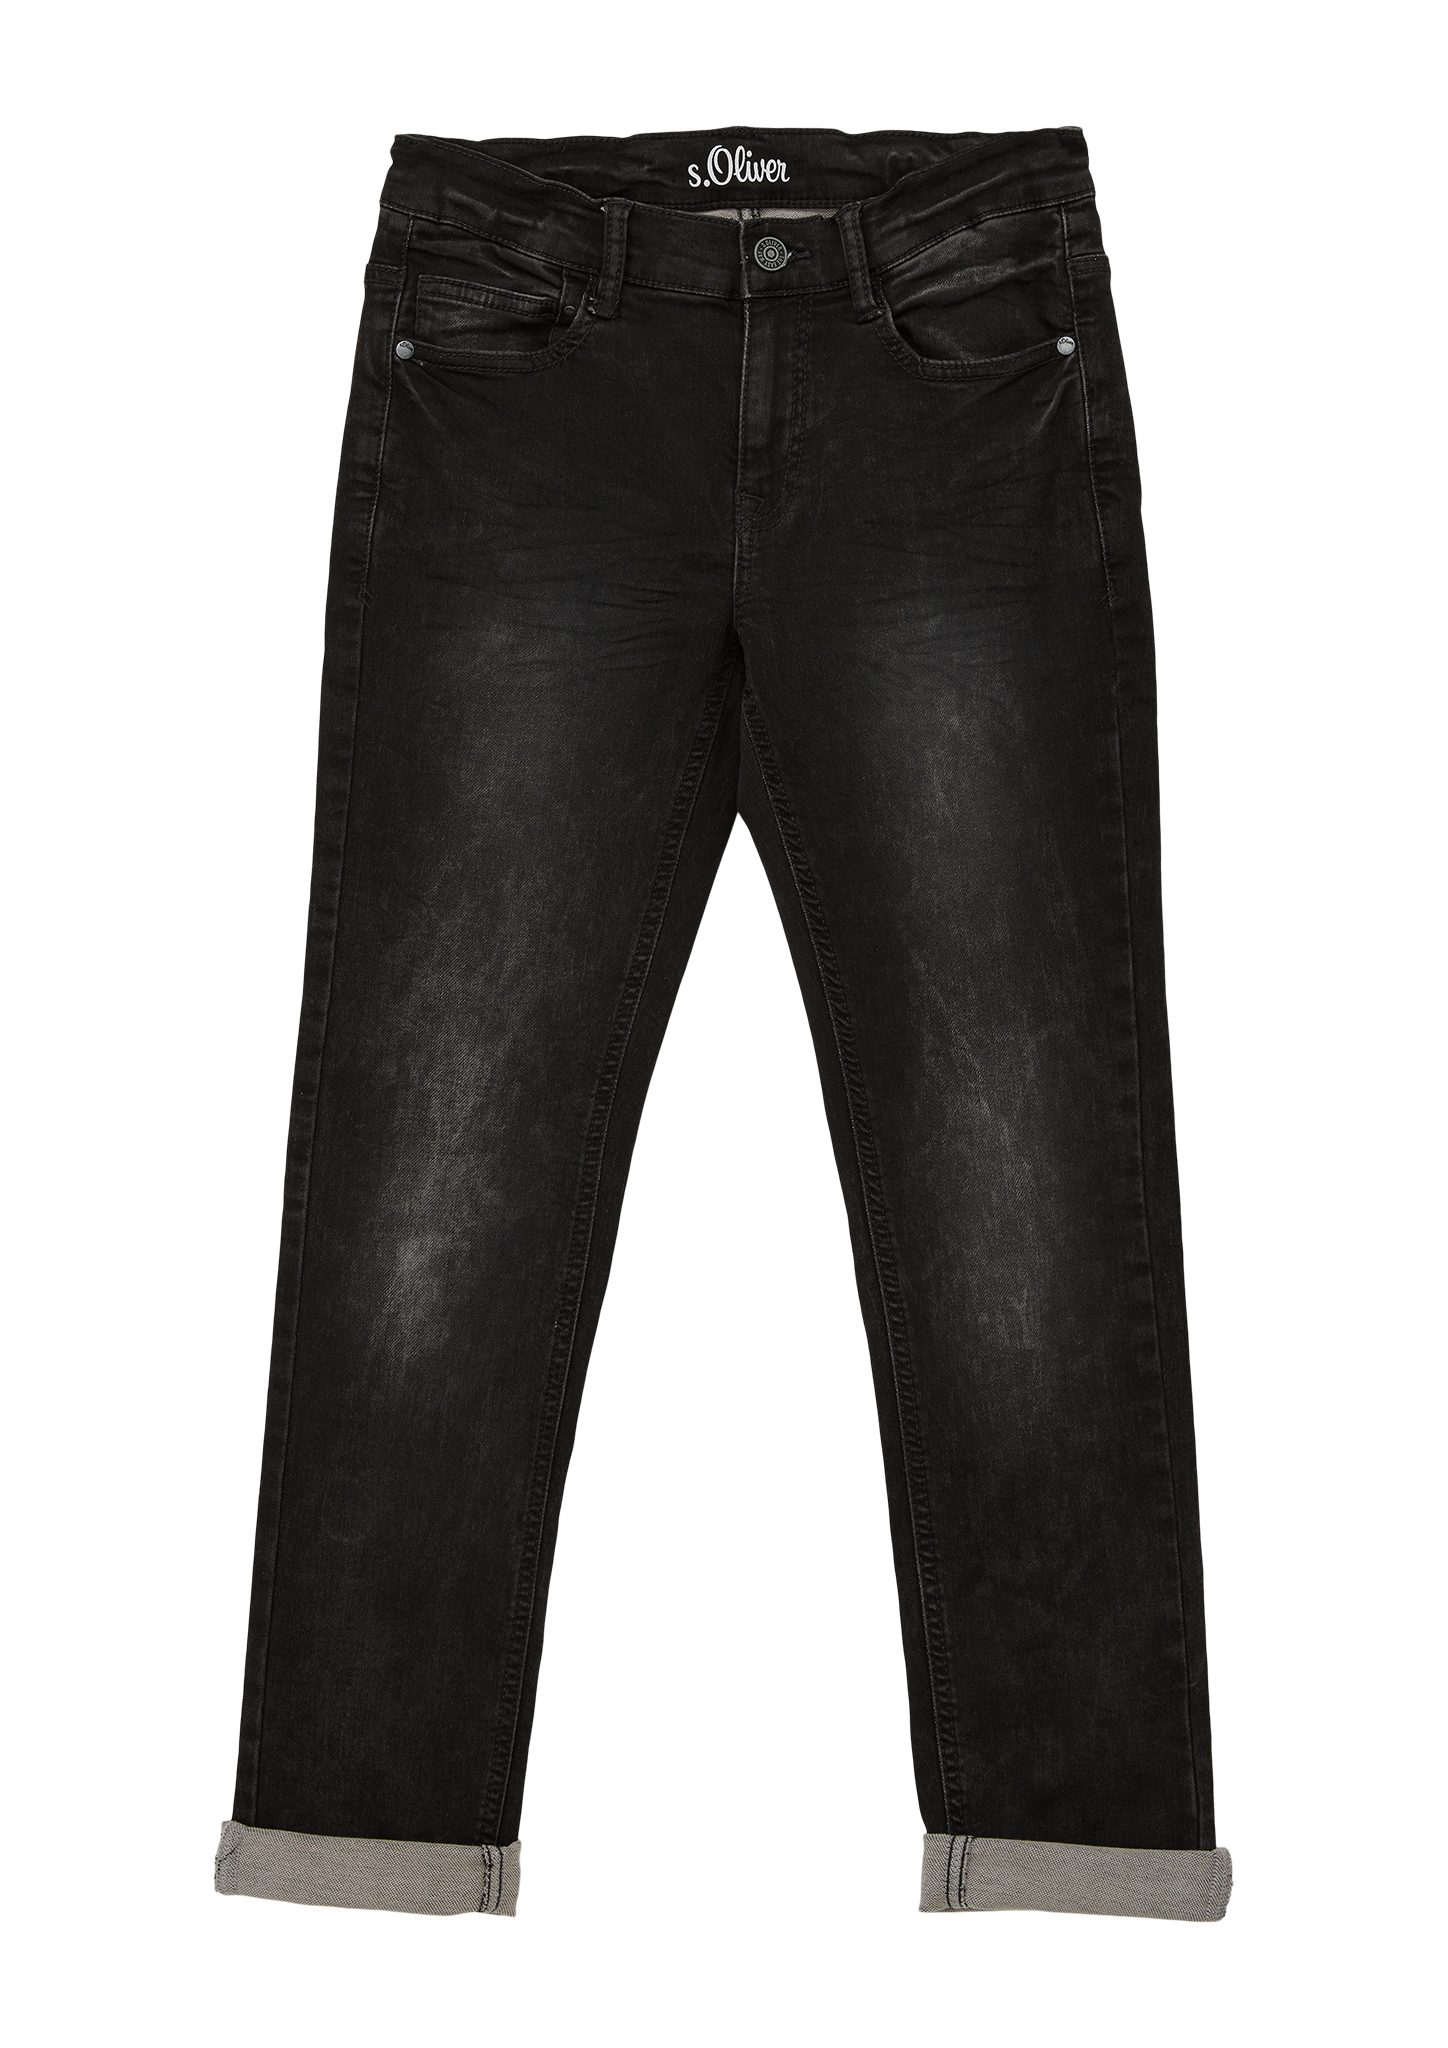 Junior Waschung / s.Oliver / Rise Fit s.Oliver Jeans Regular 5-Pocket-Jeans Mid / Slim Seattle Leg